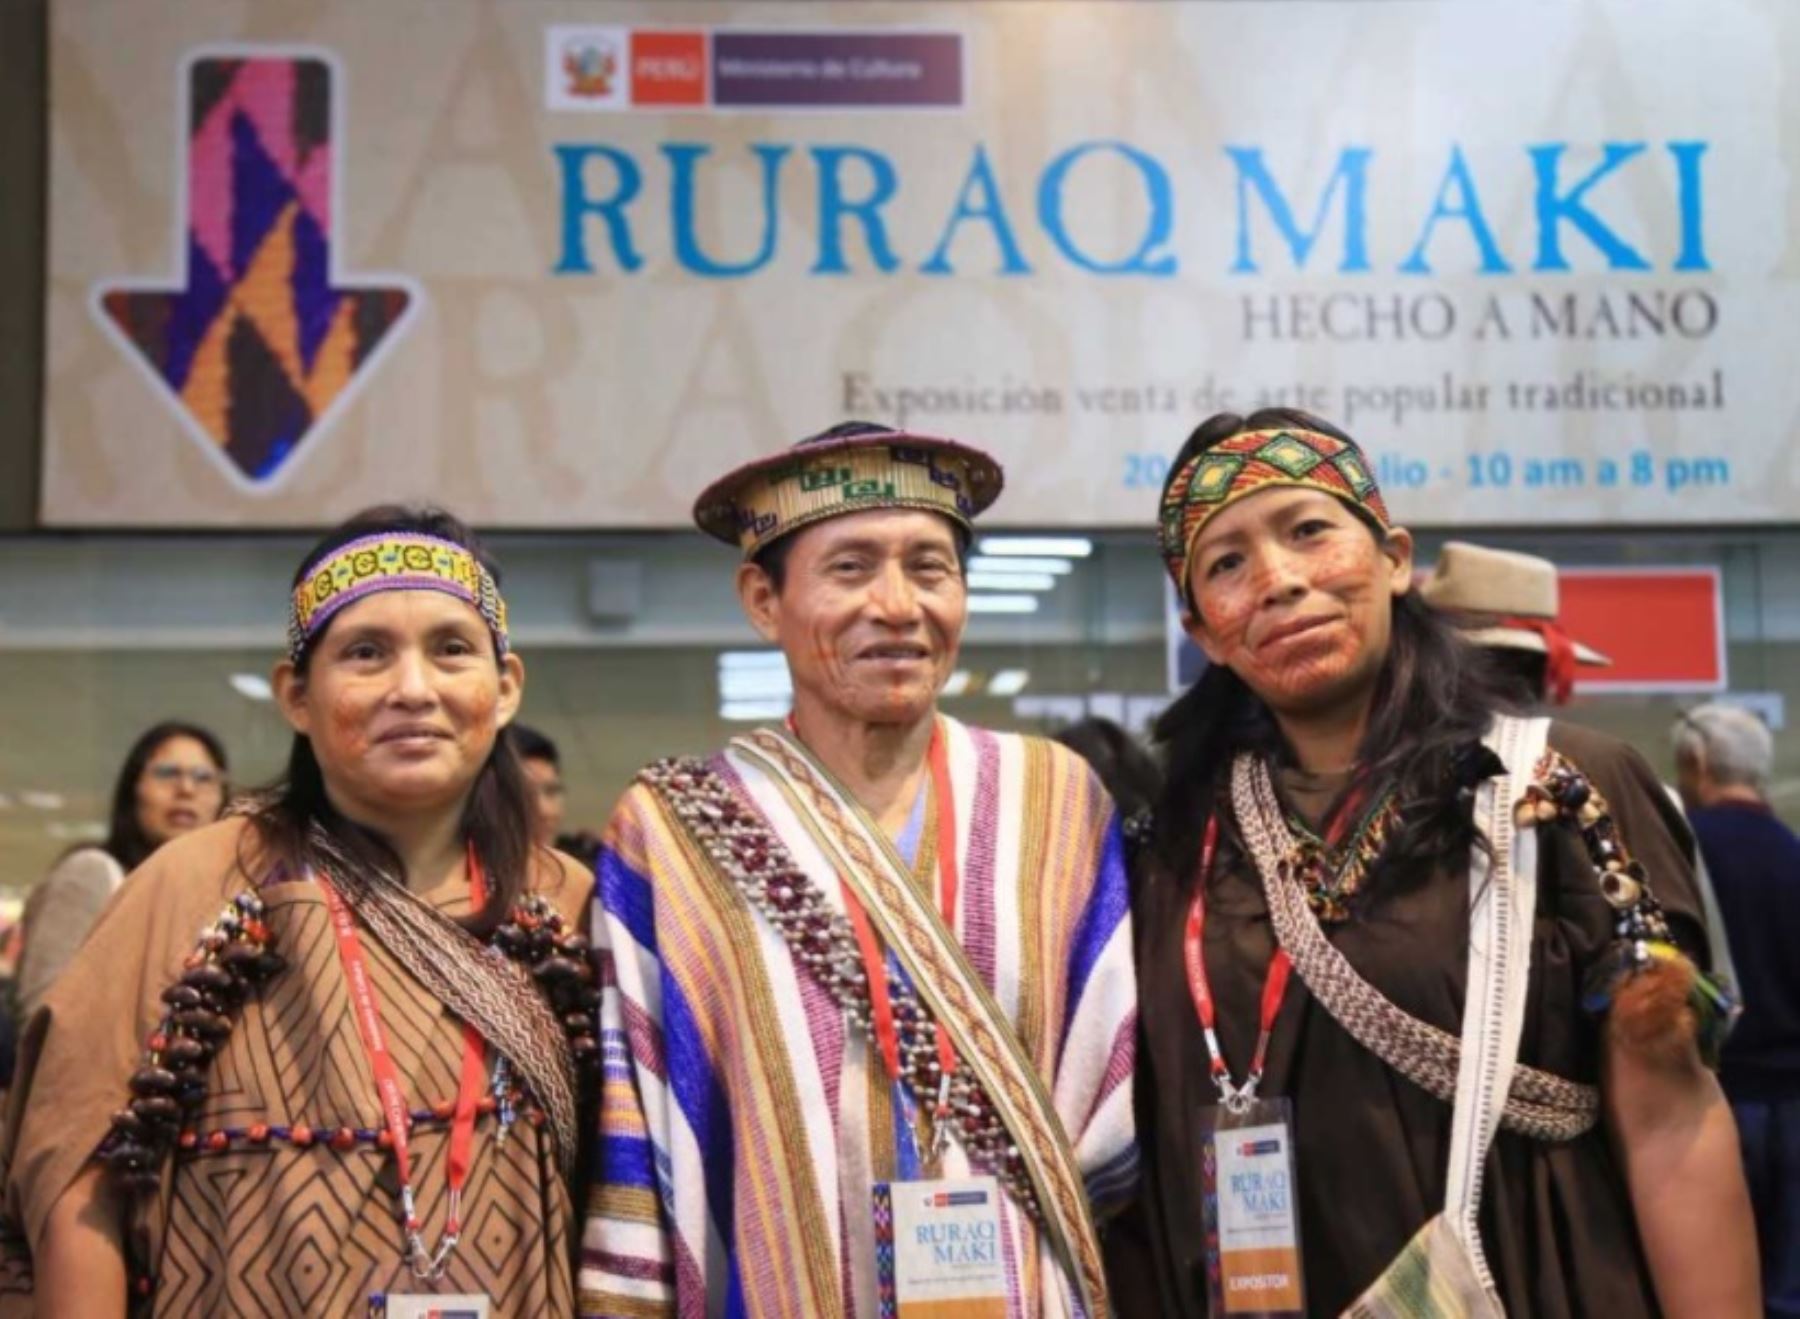 El Ministerio de Cultura inauguró hoy “Ruraq Maki: Hecho a Mano”, la feria artesanal más importante del Perú que este año reúne en la sala Kuélap a 130 colectivos de maestros artesanos en una exposición venta de su arte popular y tradicional.